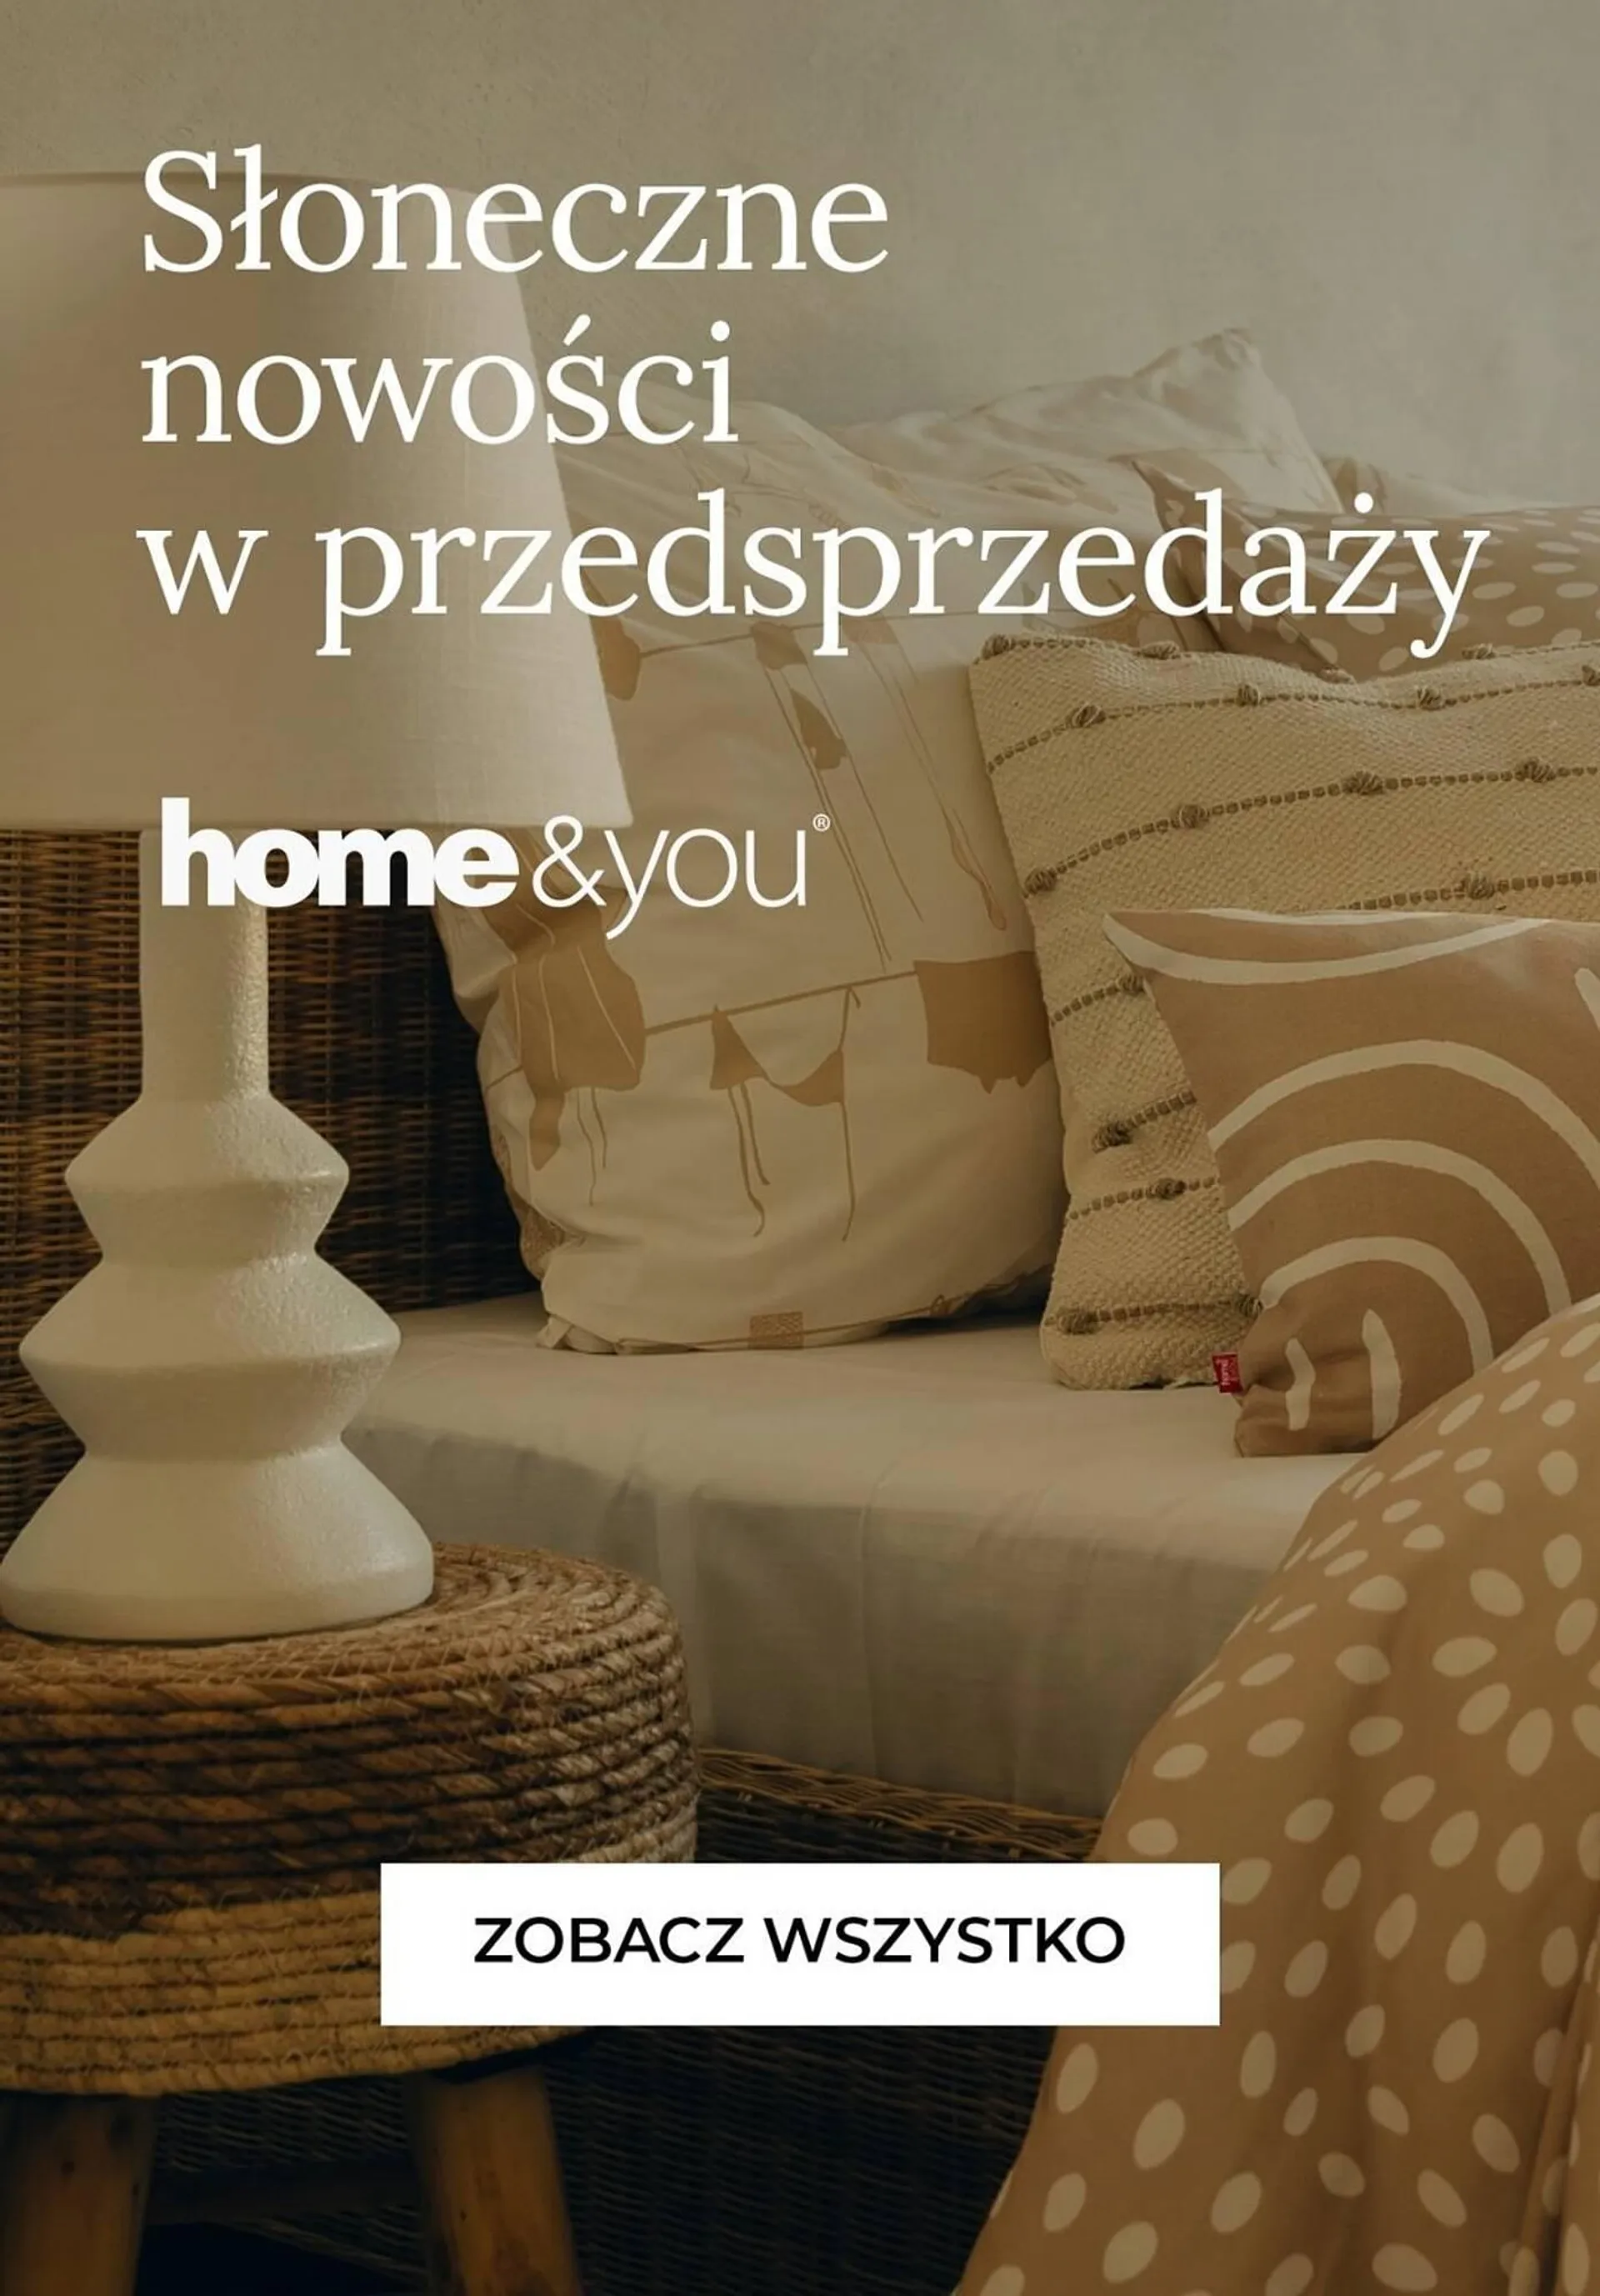 Home&You gazetka - 1